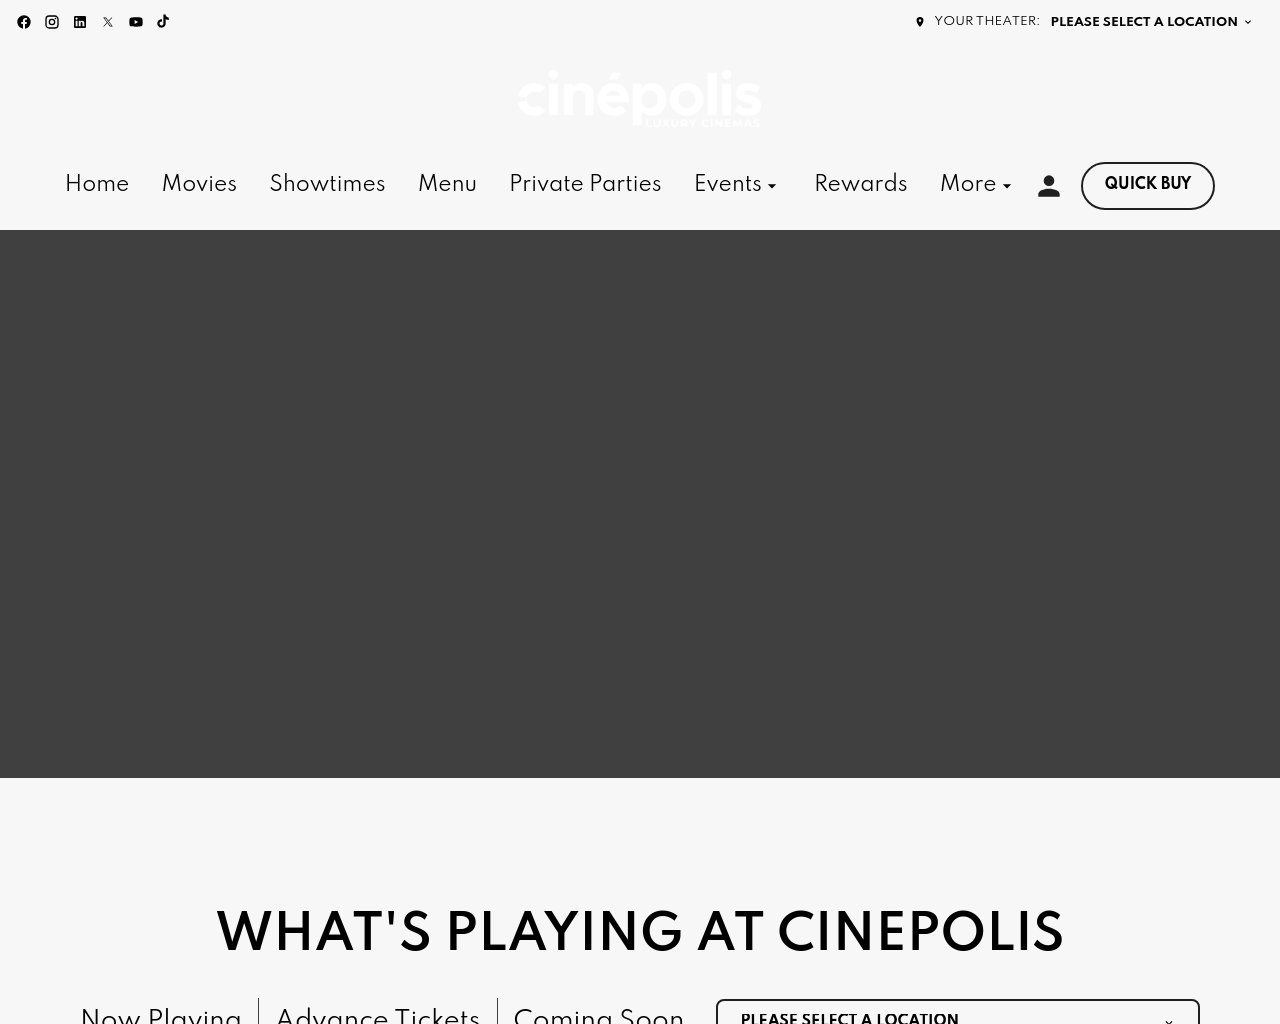 cinepolisusa.com